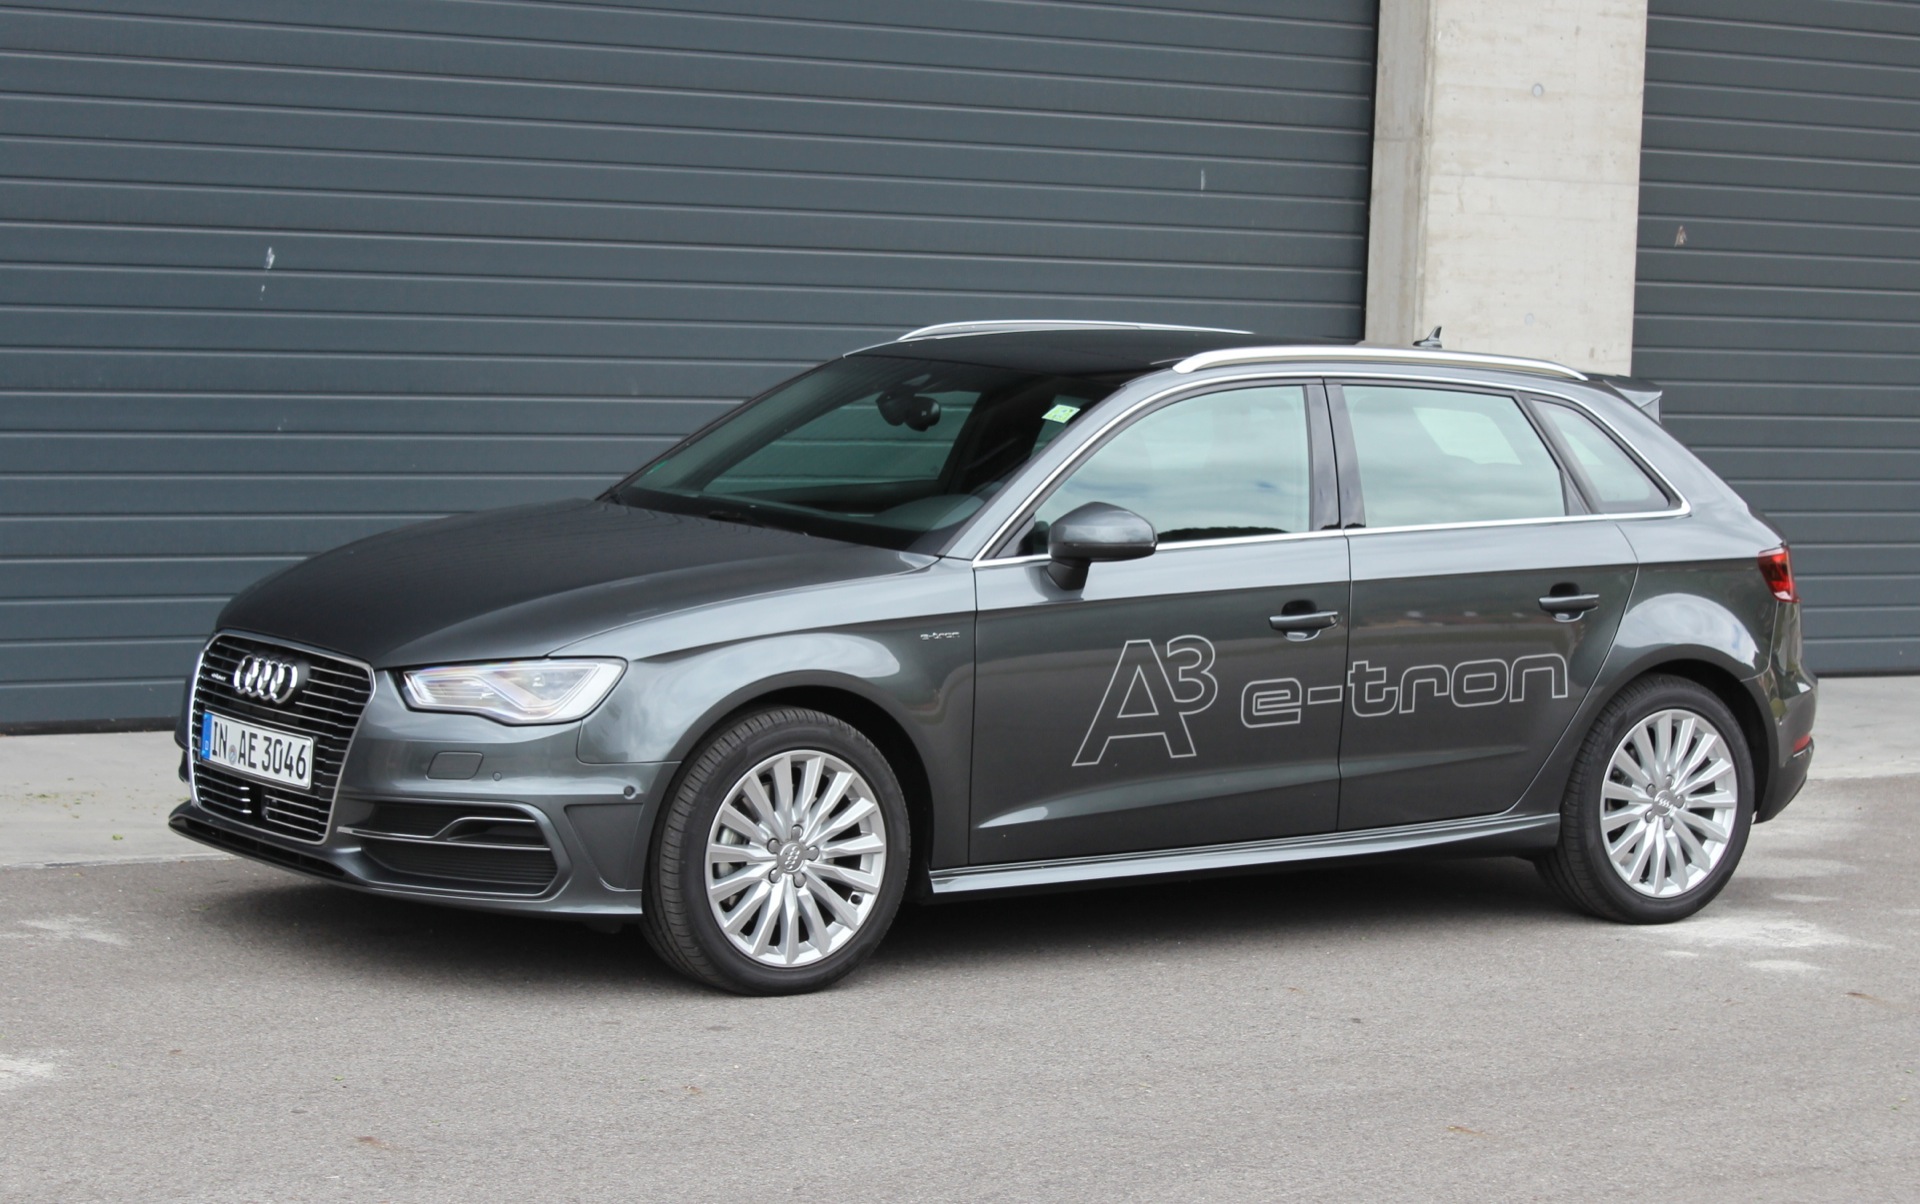 plank Grondwet haag 2016 Audi A3 e-tron: First Drive